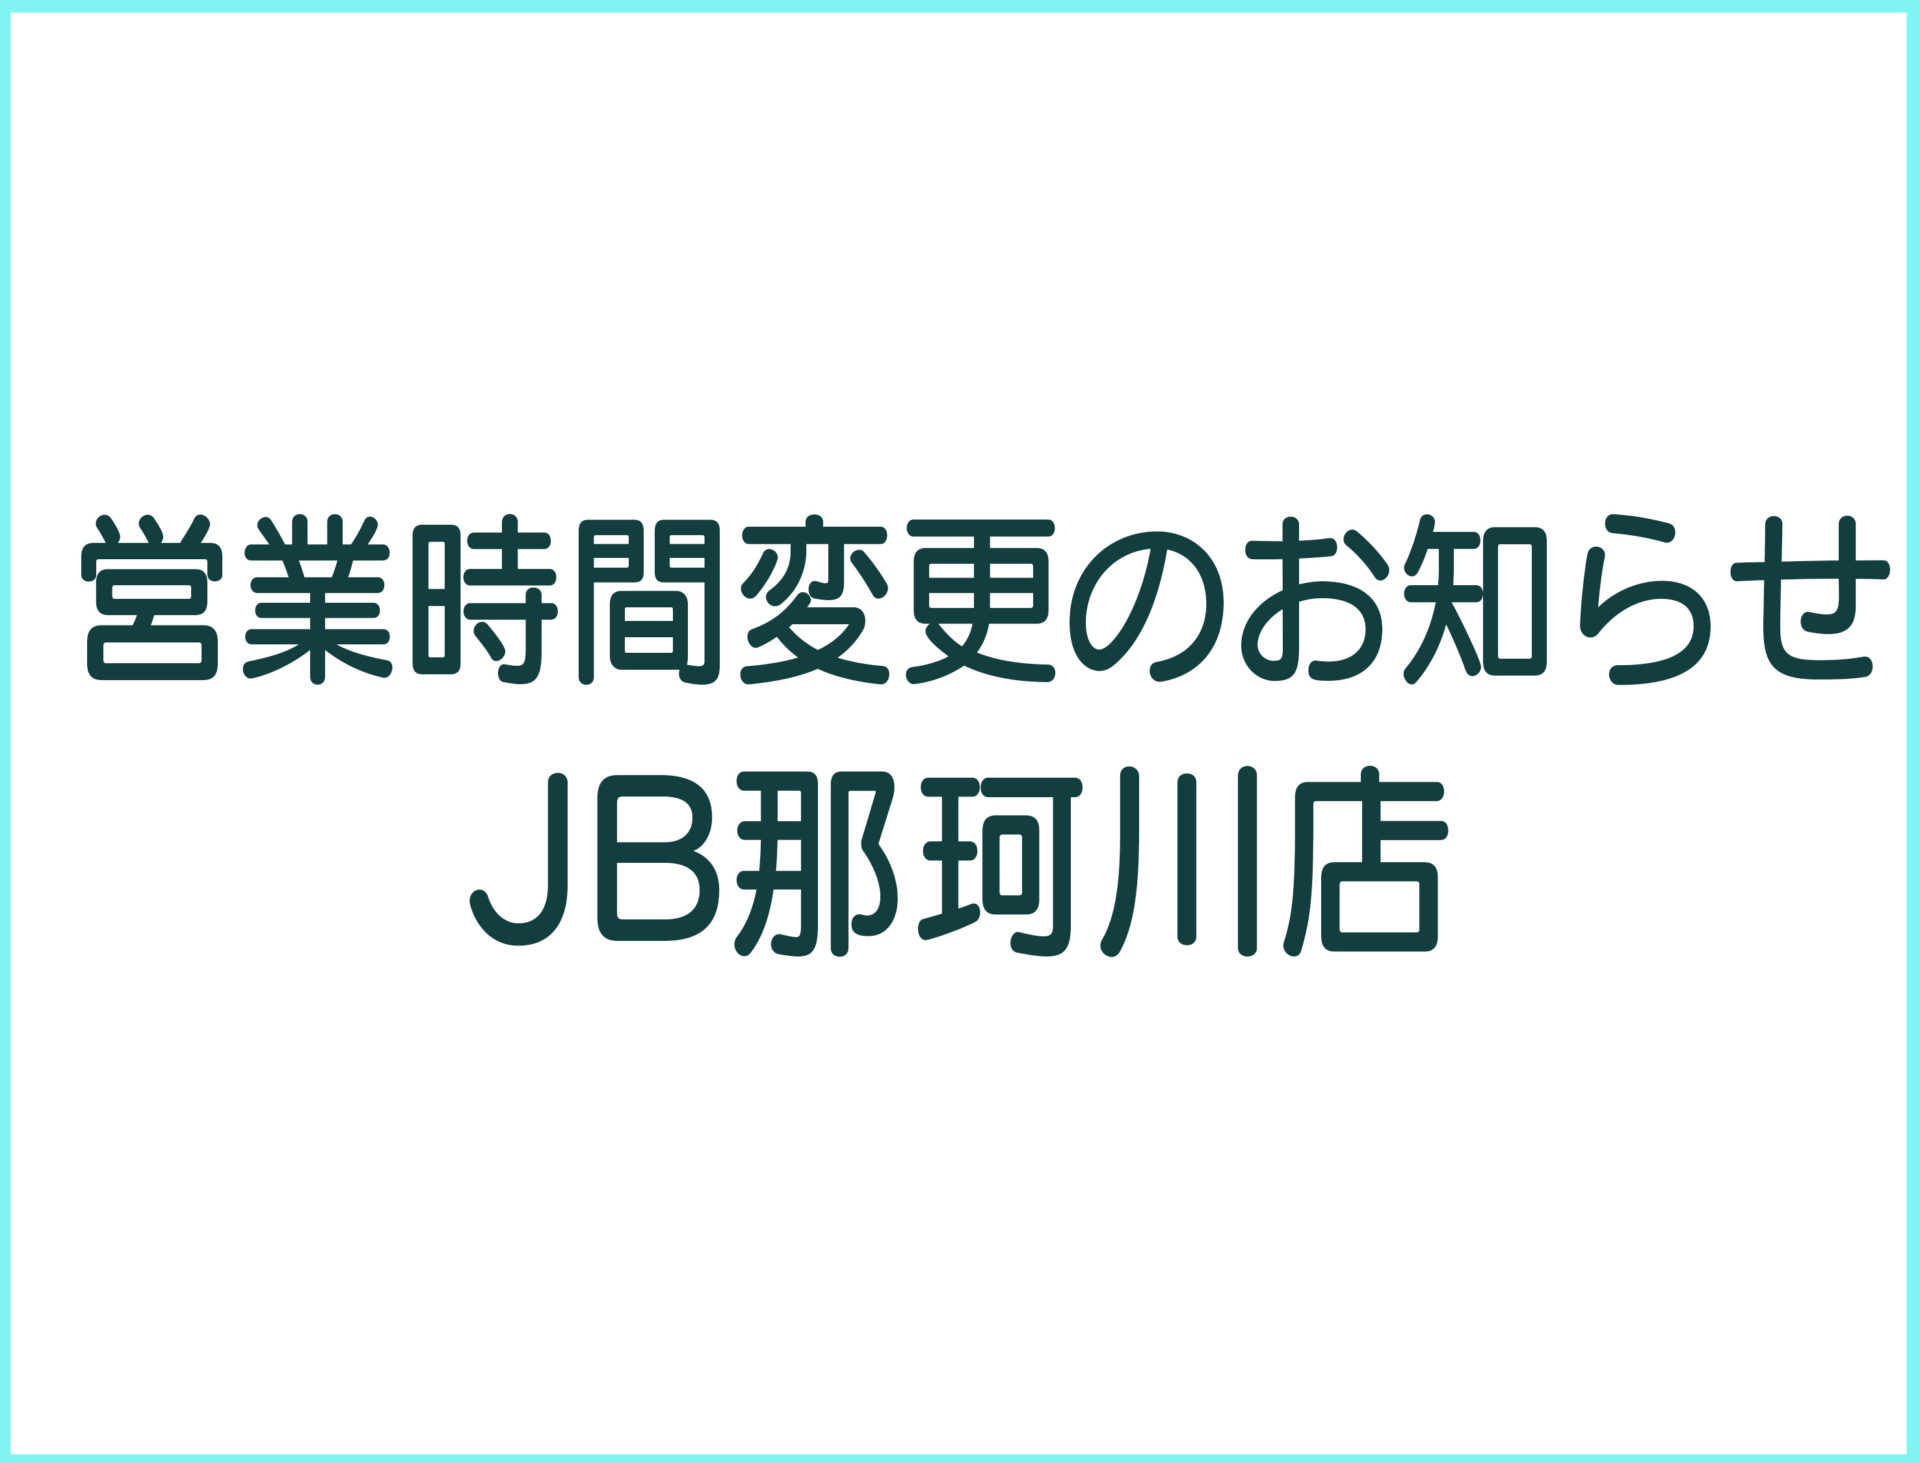 【 JB那珂川店 】臨時休業のお知らせ